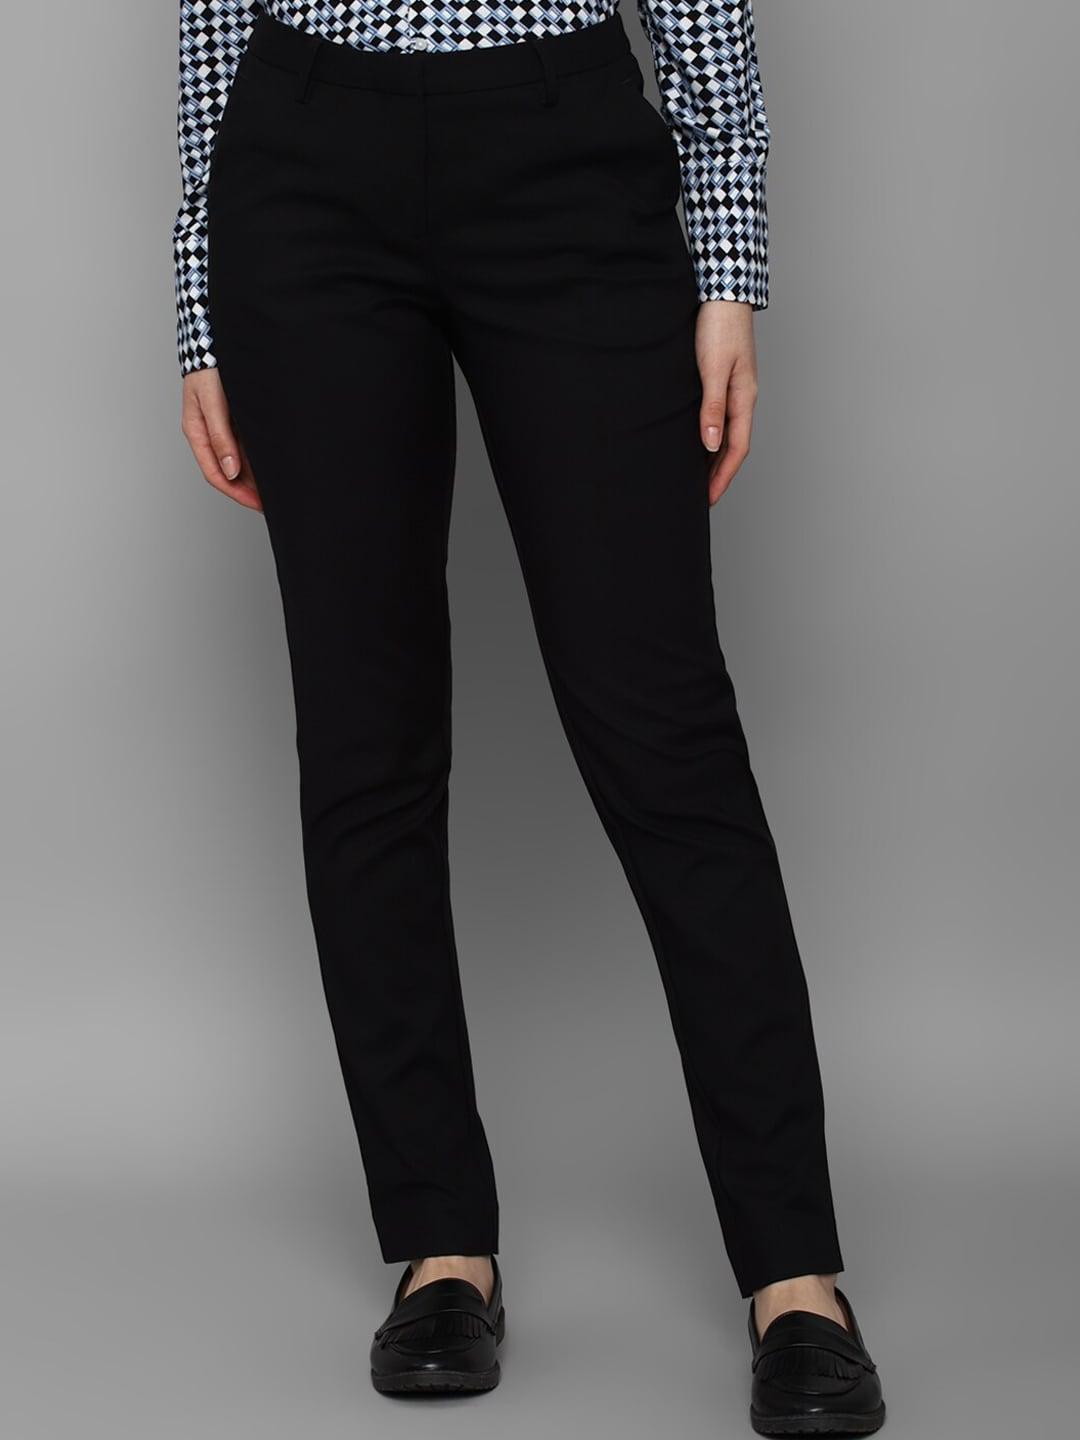 allen-solly-woman-women-black-trousers